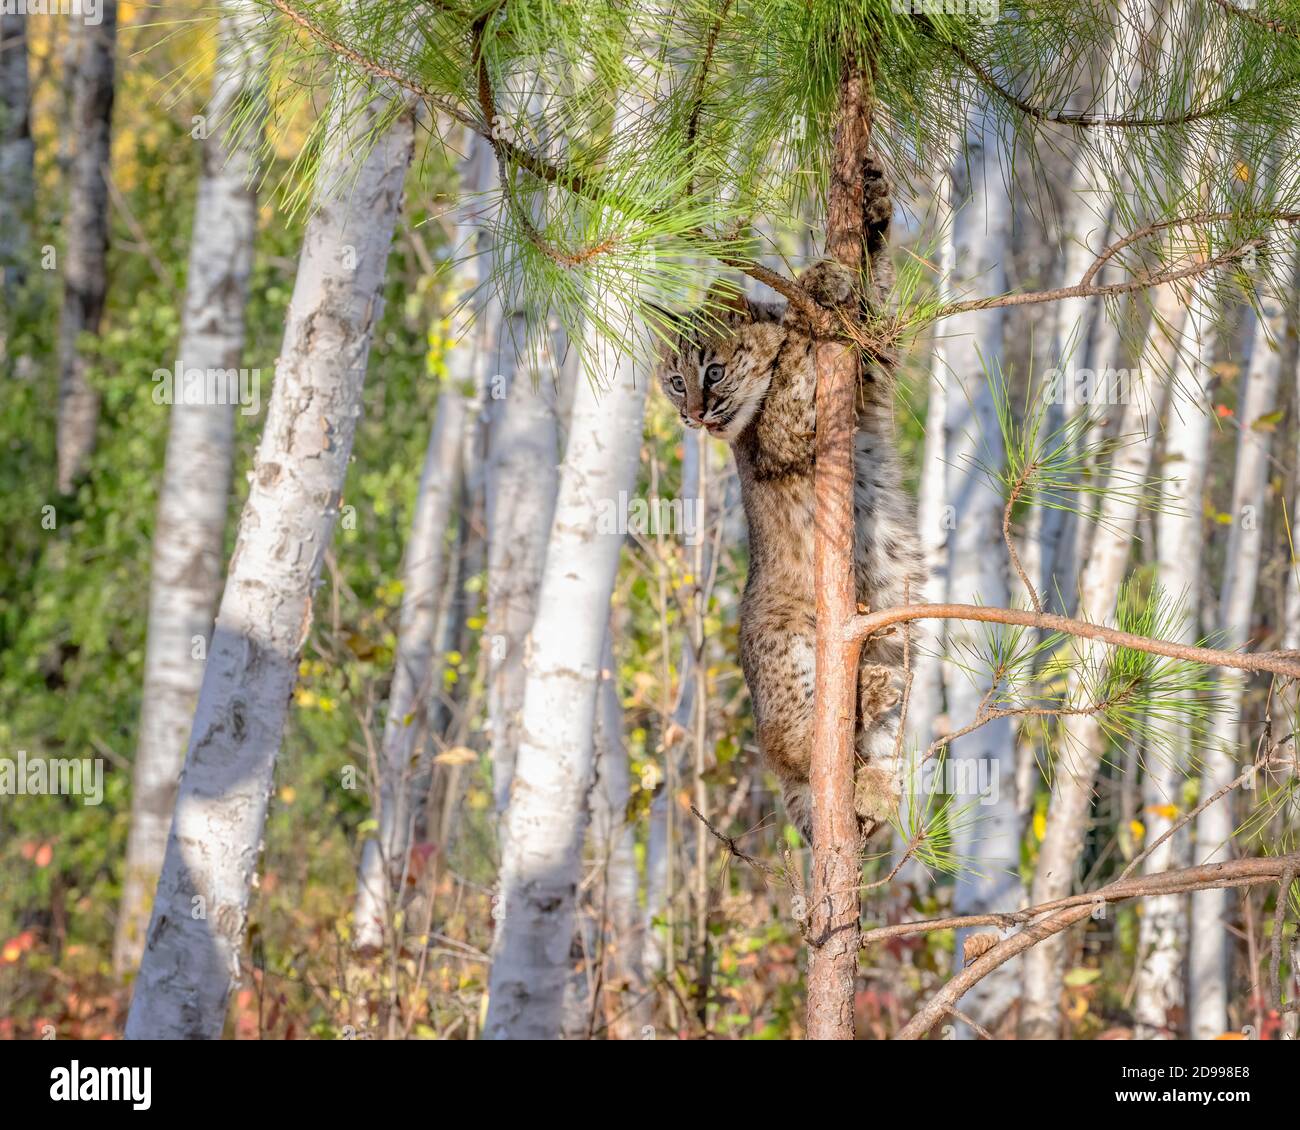 Bobcat Kitten climbing a Pine Tree in a Birch Forest Stock Photo